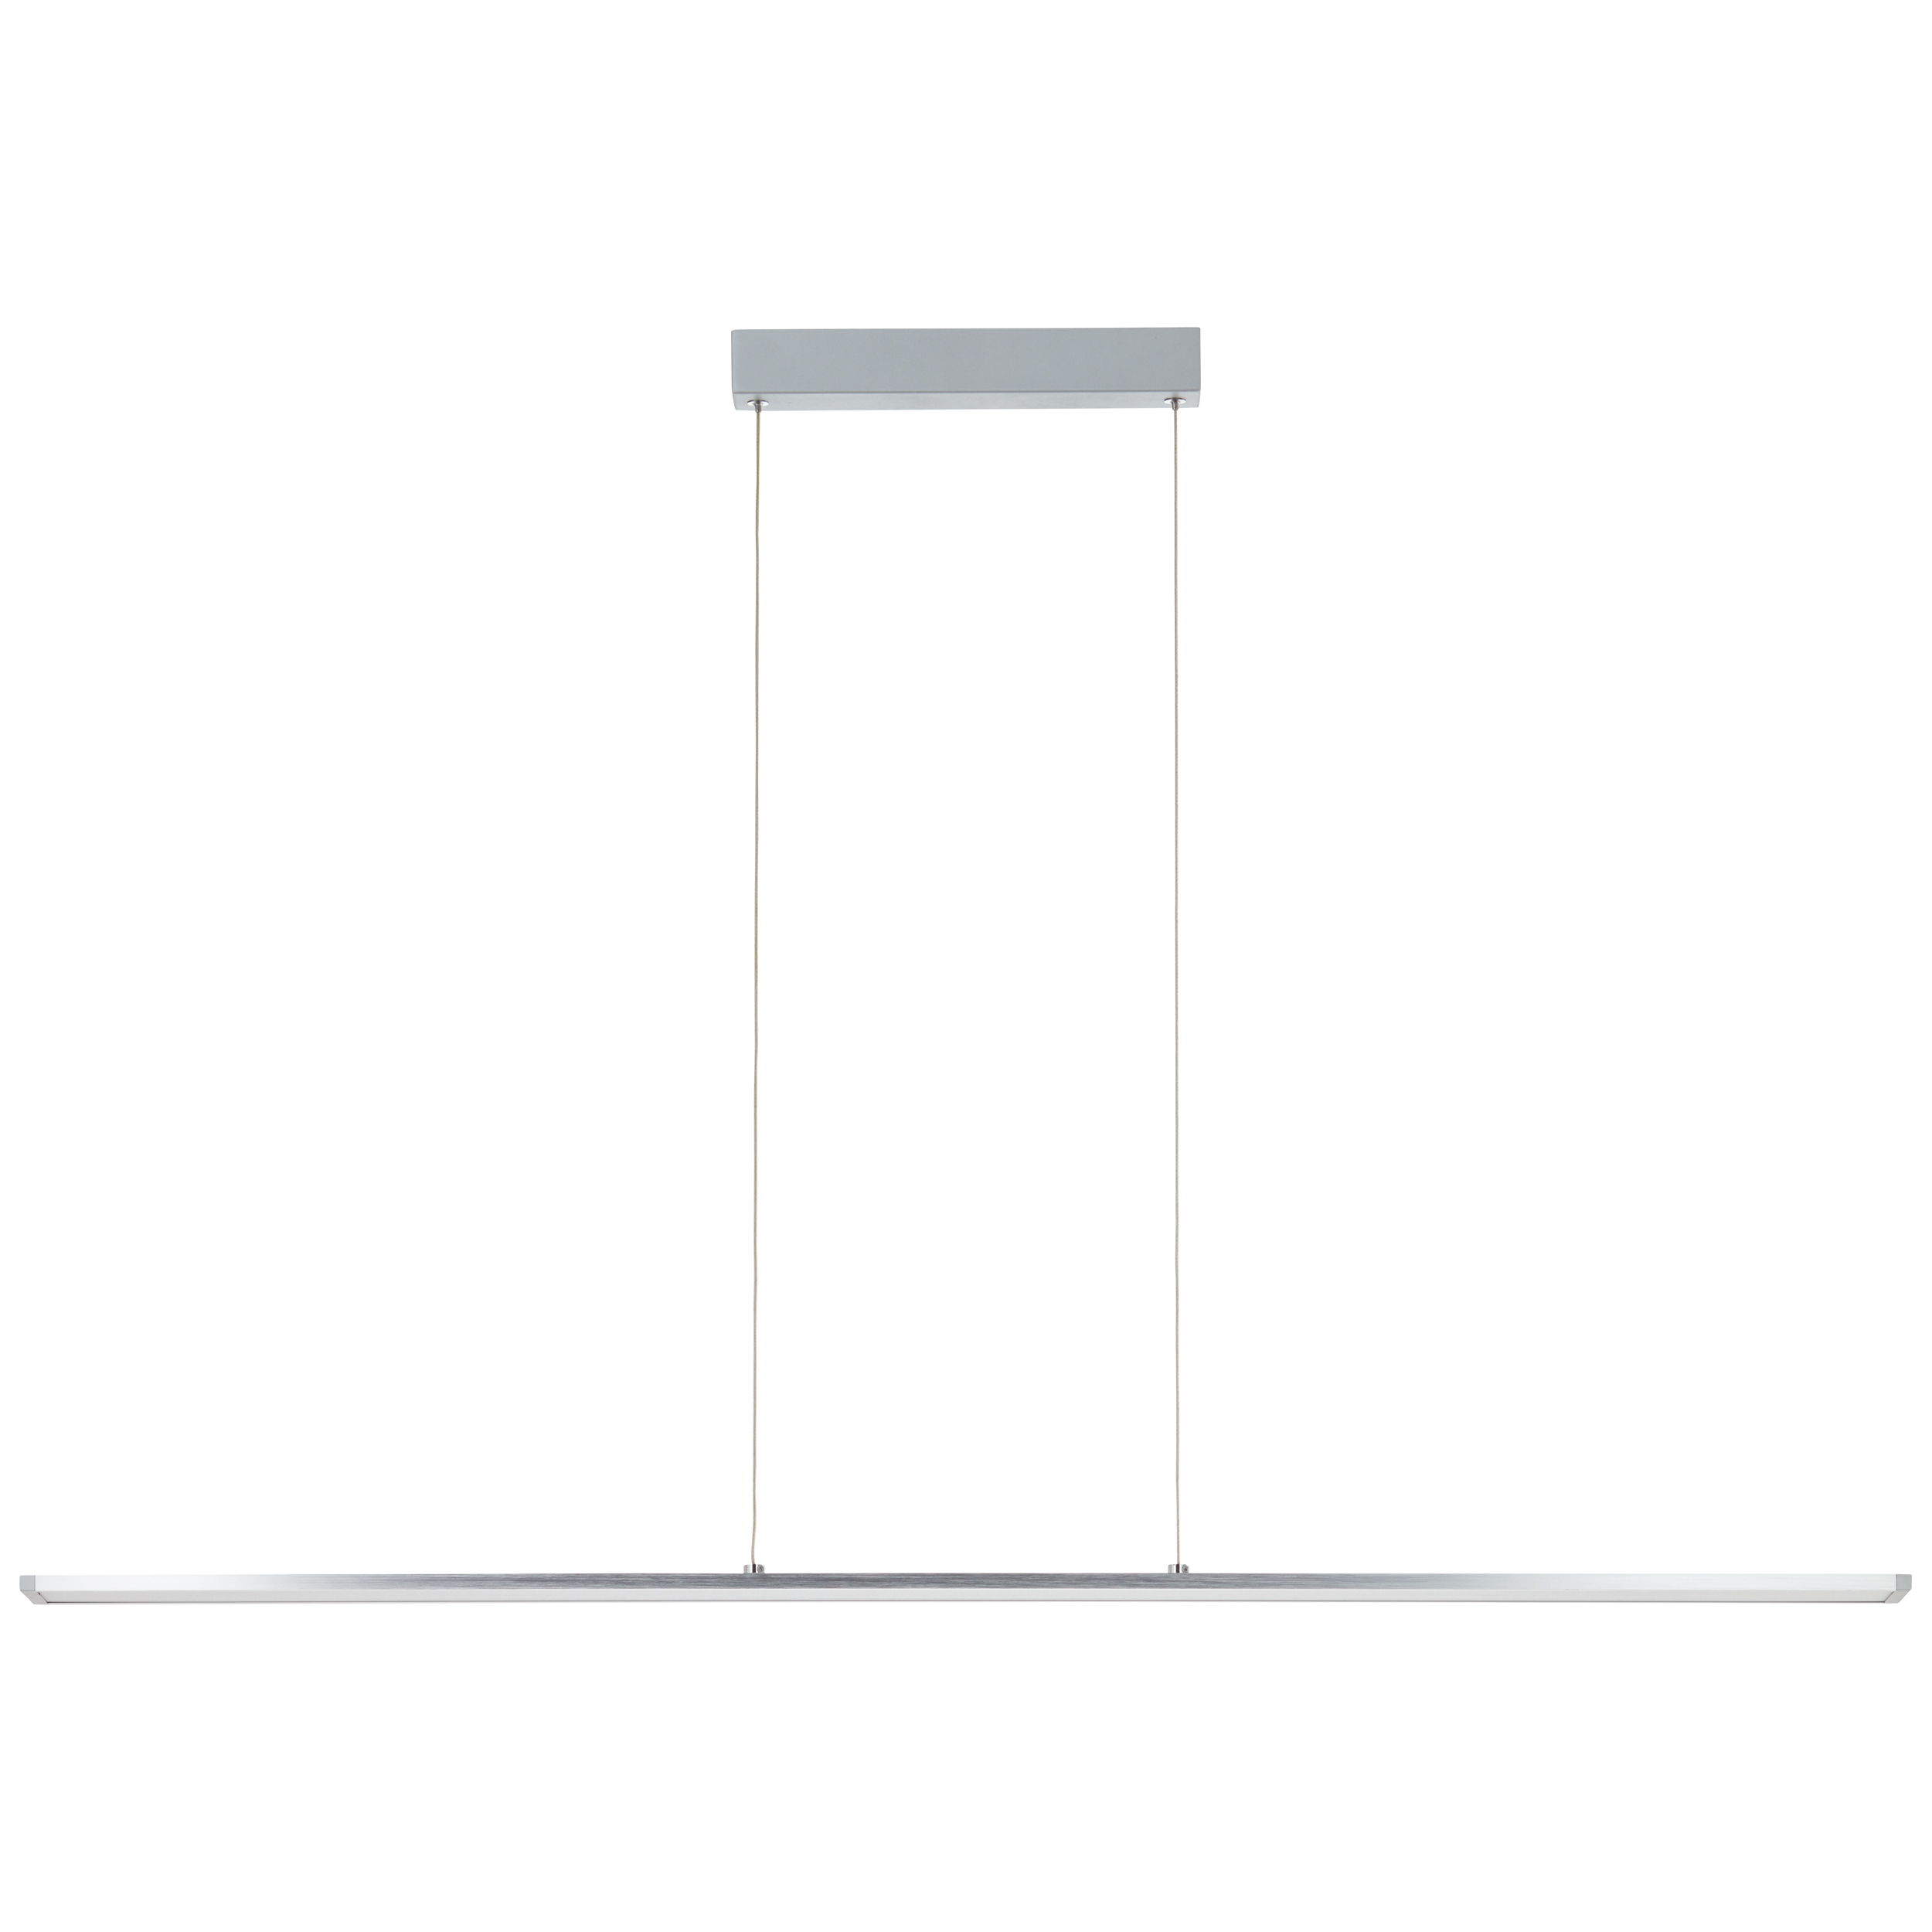 Entrance LED Pendelleuchte Paneel 120cm alu/weiß | easyDim G97028/21